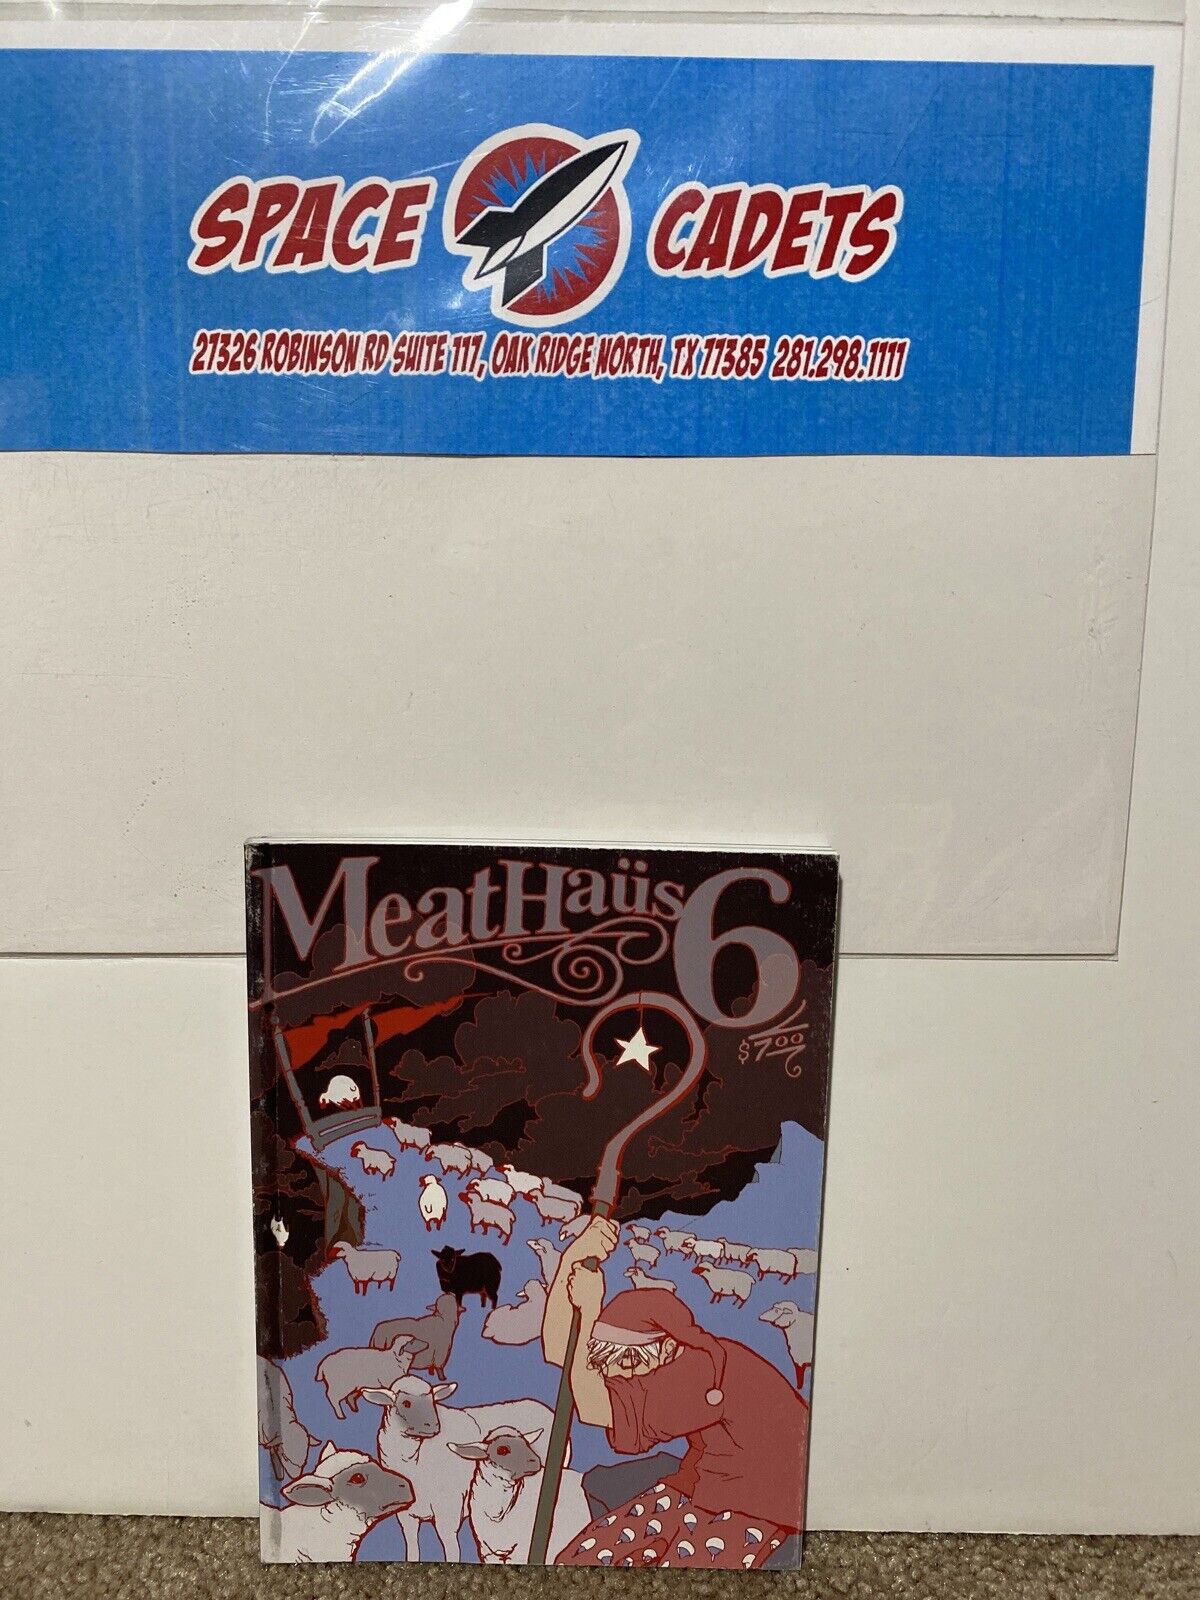 Meat Haus 6 Meathaus Enterprises 2001 Graphic Novel